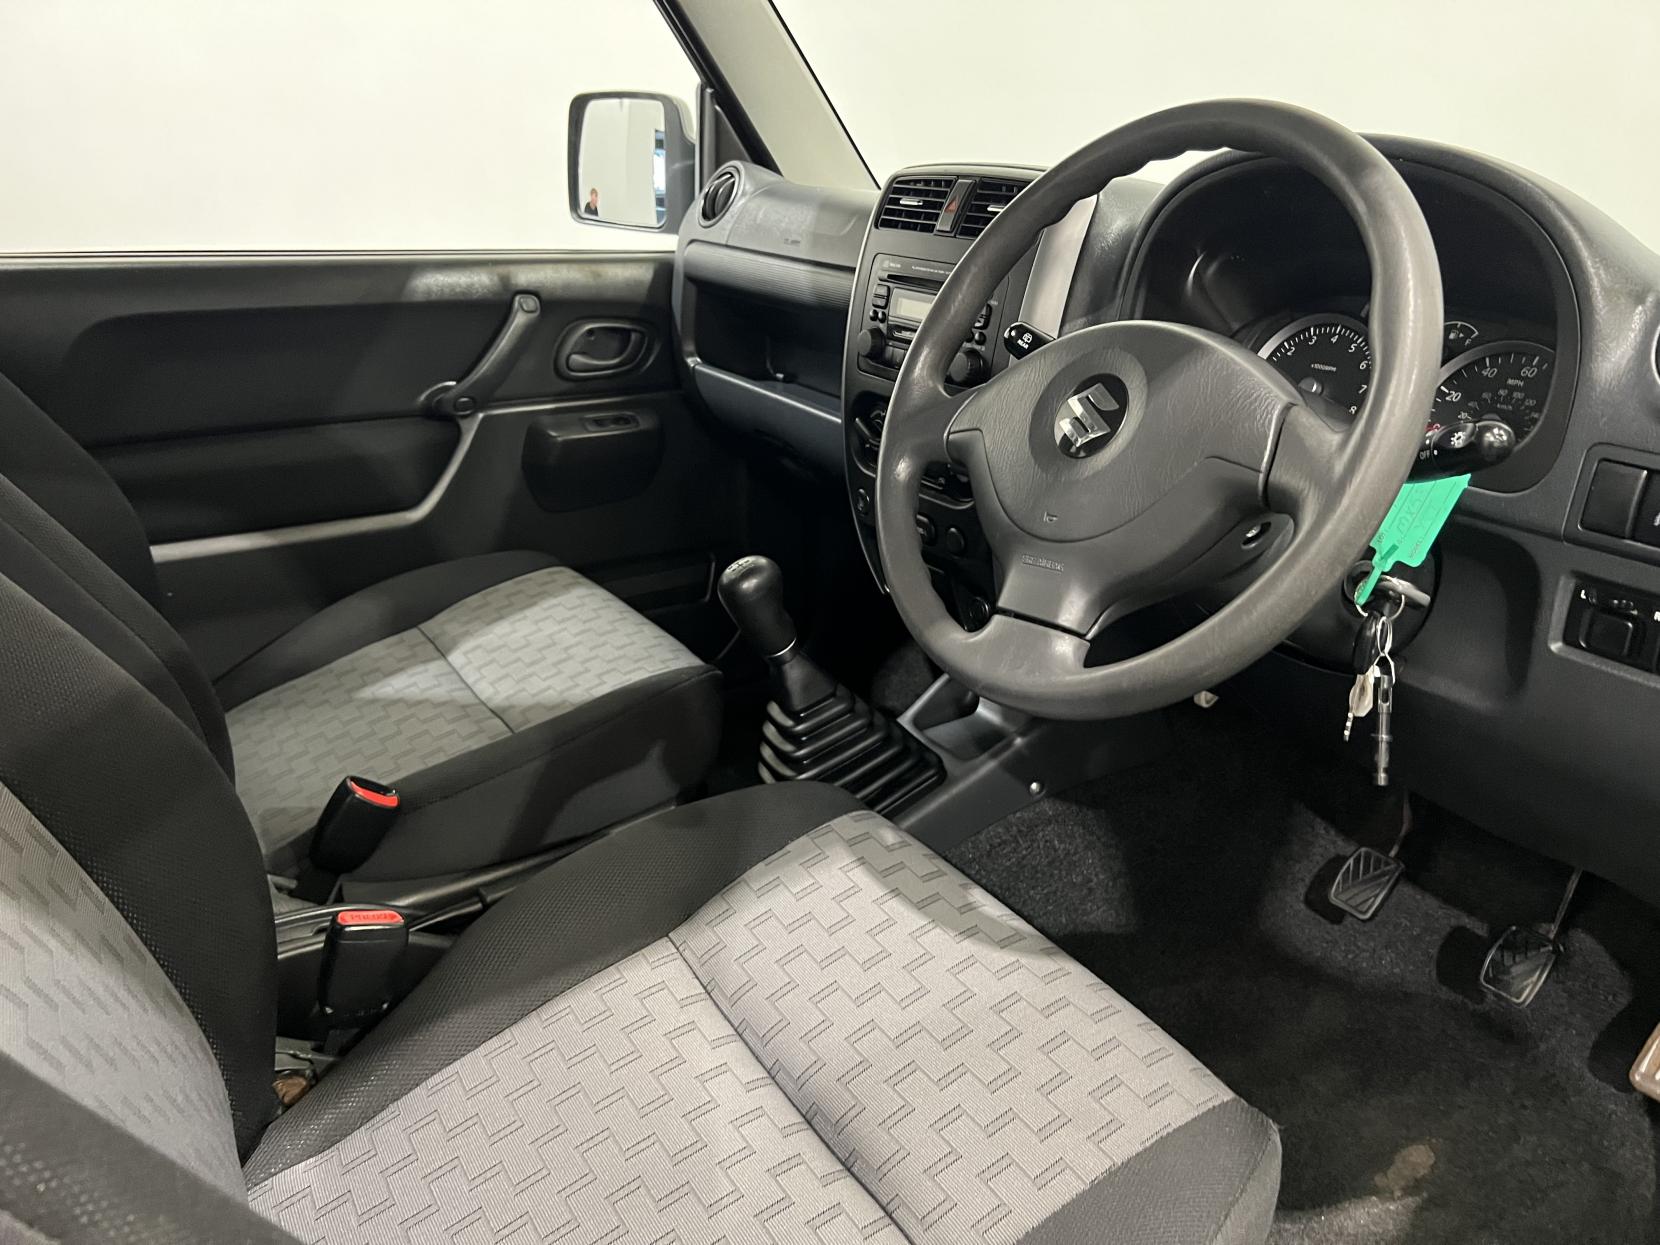 Suzuki Jimny 1.3 JLX SUV 3dr Petrol Manual (171 g/km, 83 bhp)